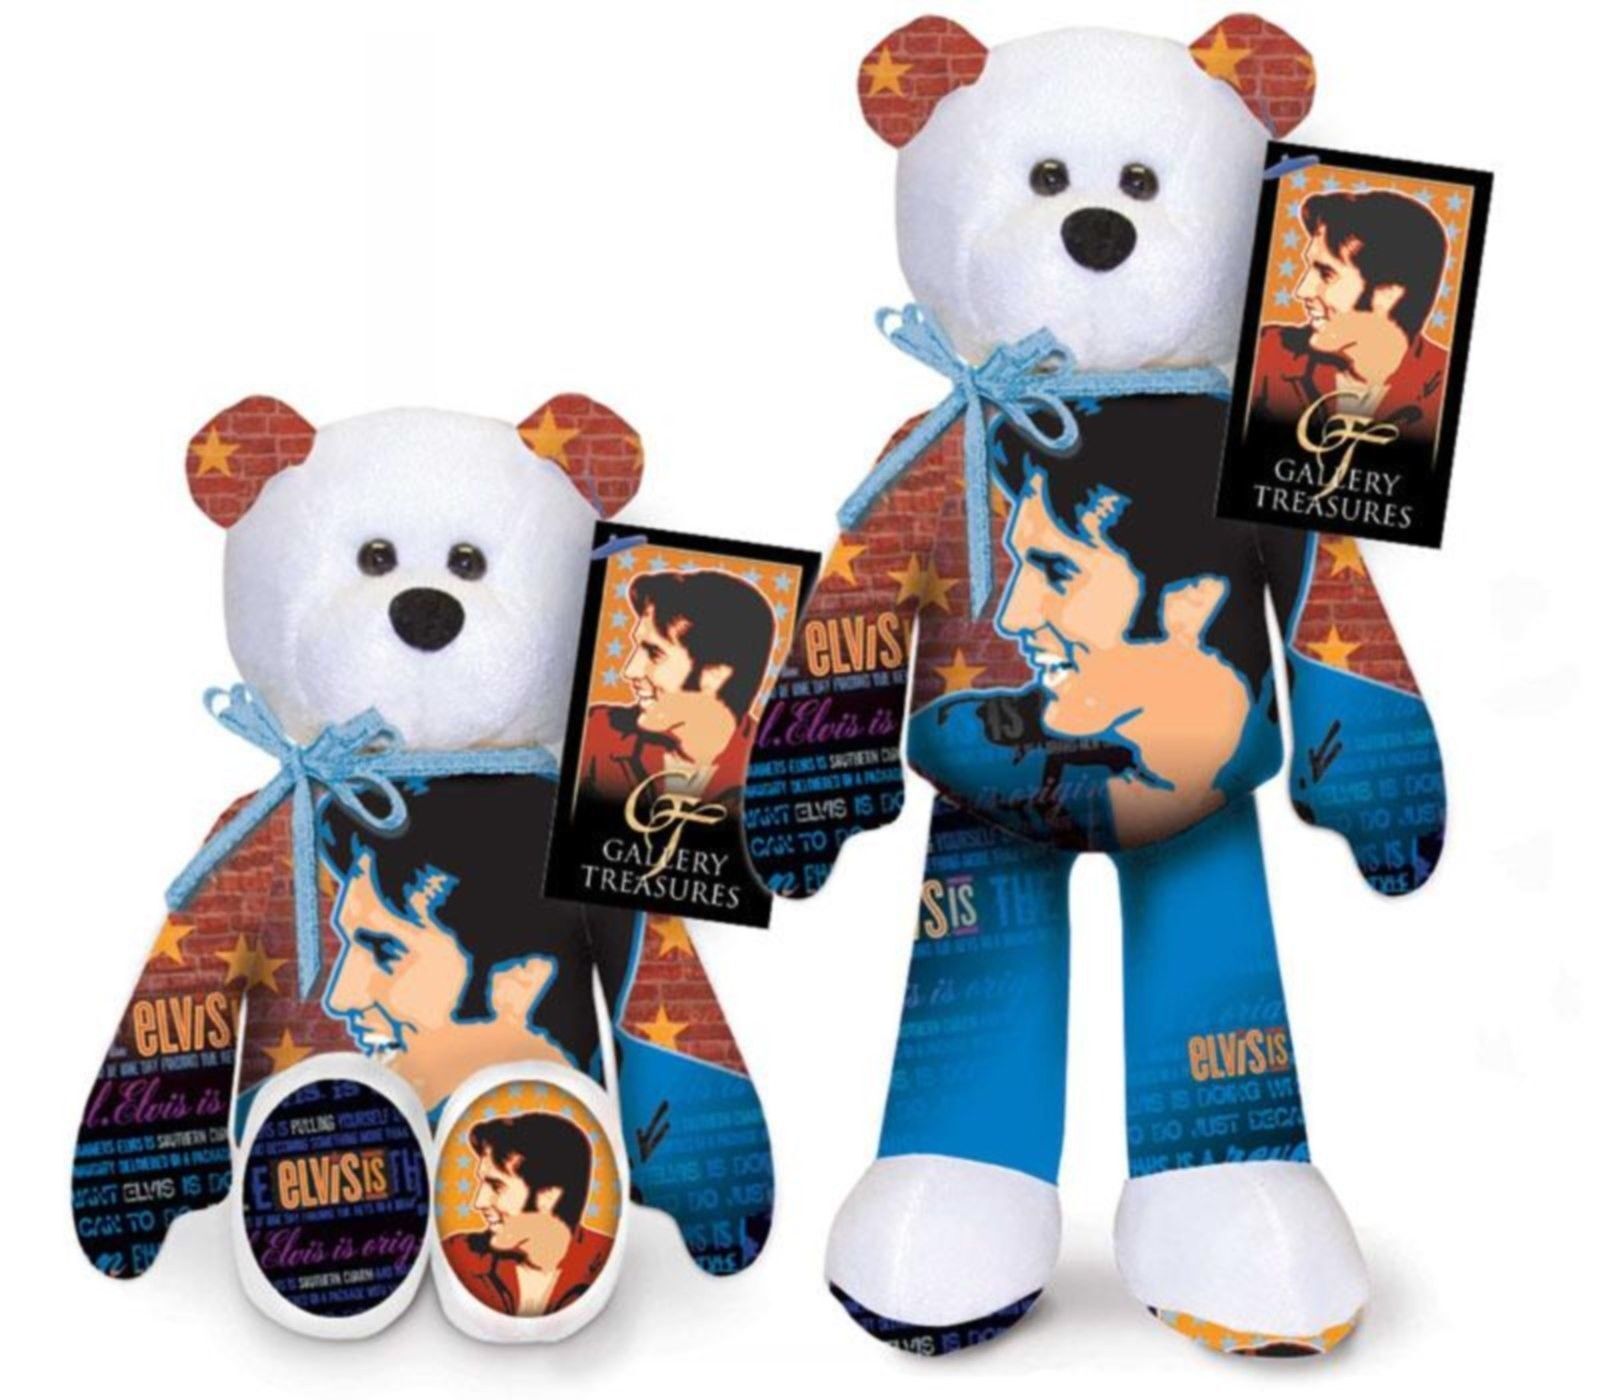 Elvis-presley Elvis Is  Collector Bear - Elvis Enterprises Special Edition